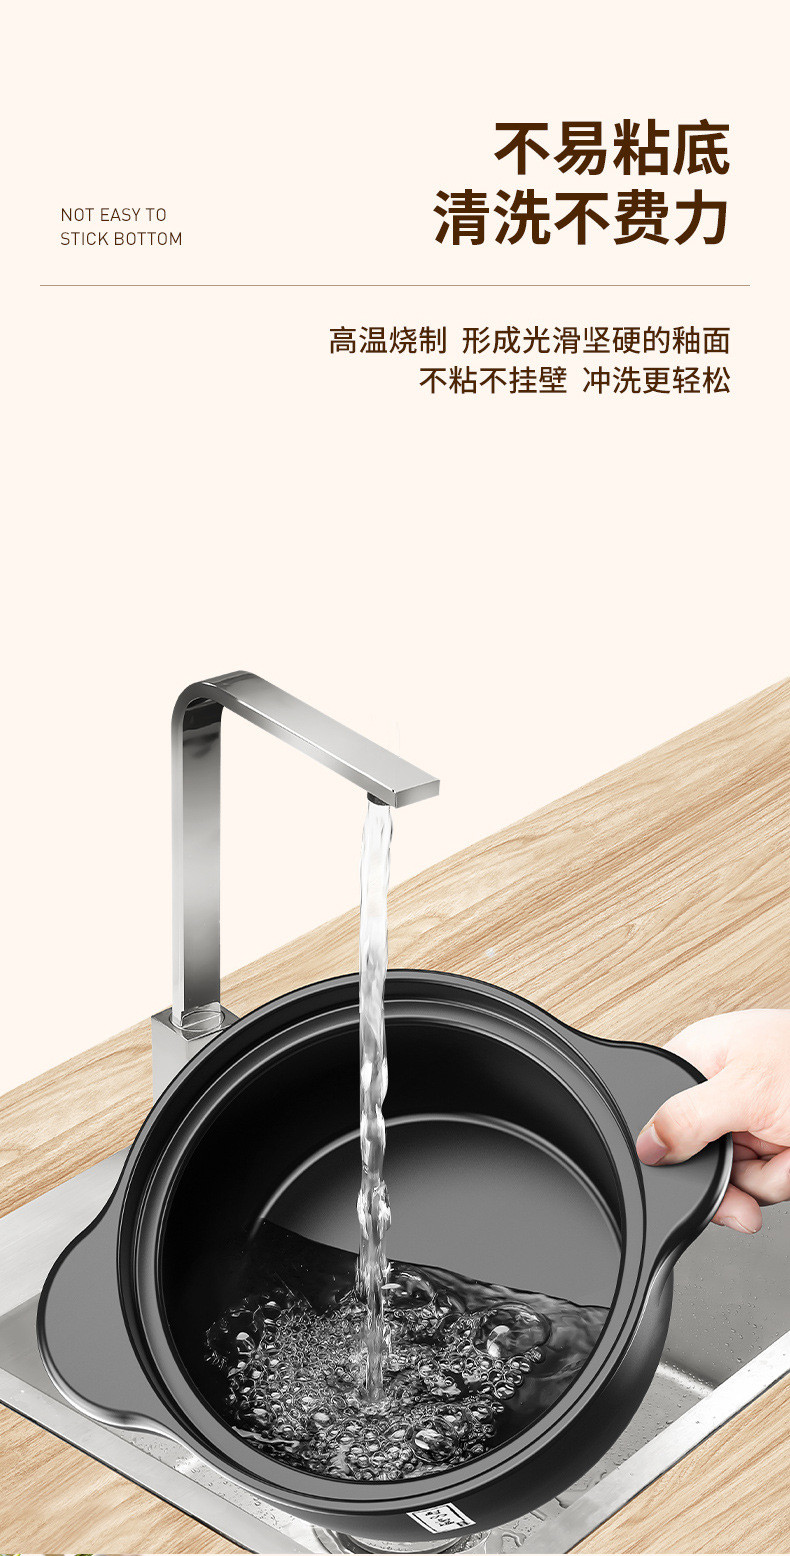  【领劵立减10元】砂锅炖锅家用燃气耐高温陶瓷煲汤锅  万奔